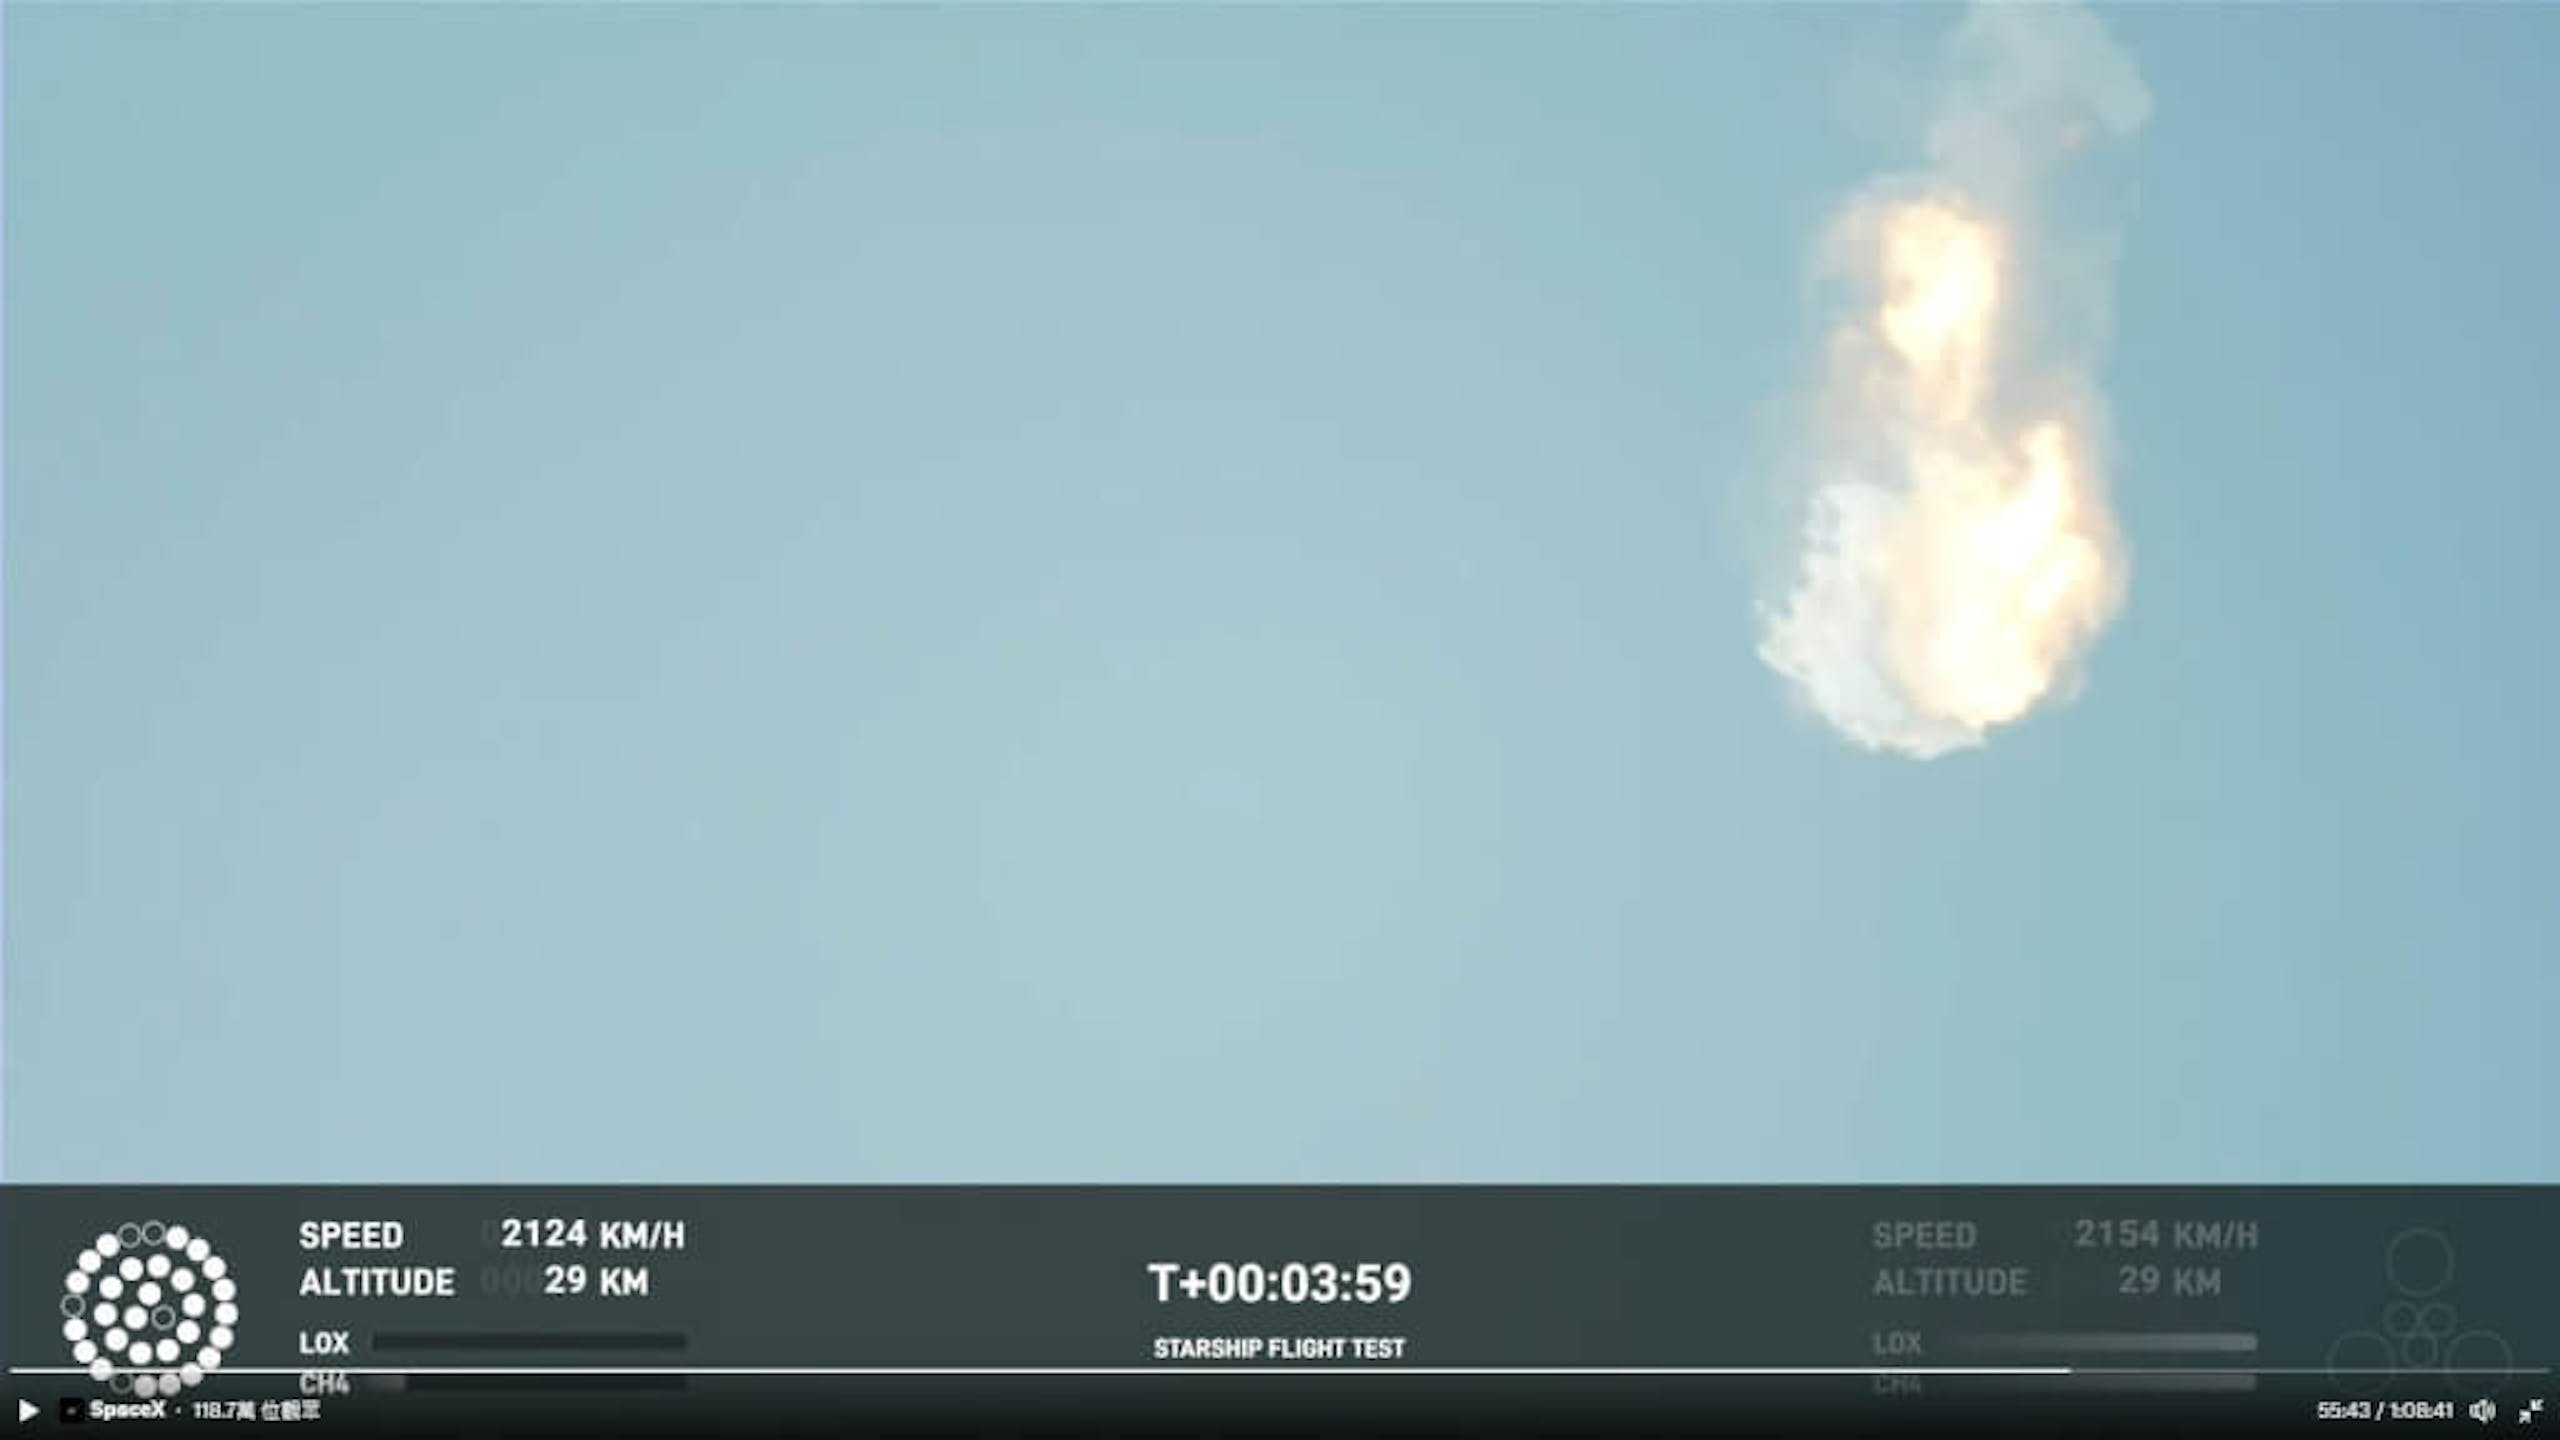 照片中提到了SpaceX 118.7M、SPEED、ALTITUDE，跟HM土地登記處有關，包含了星艦、星艦、火箭、太空探索技術公司、快速計劃外拆卸